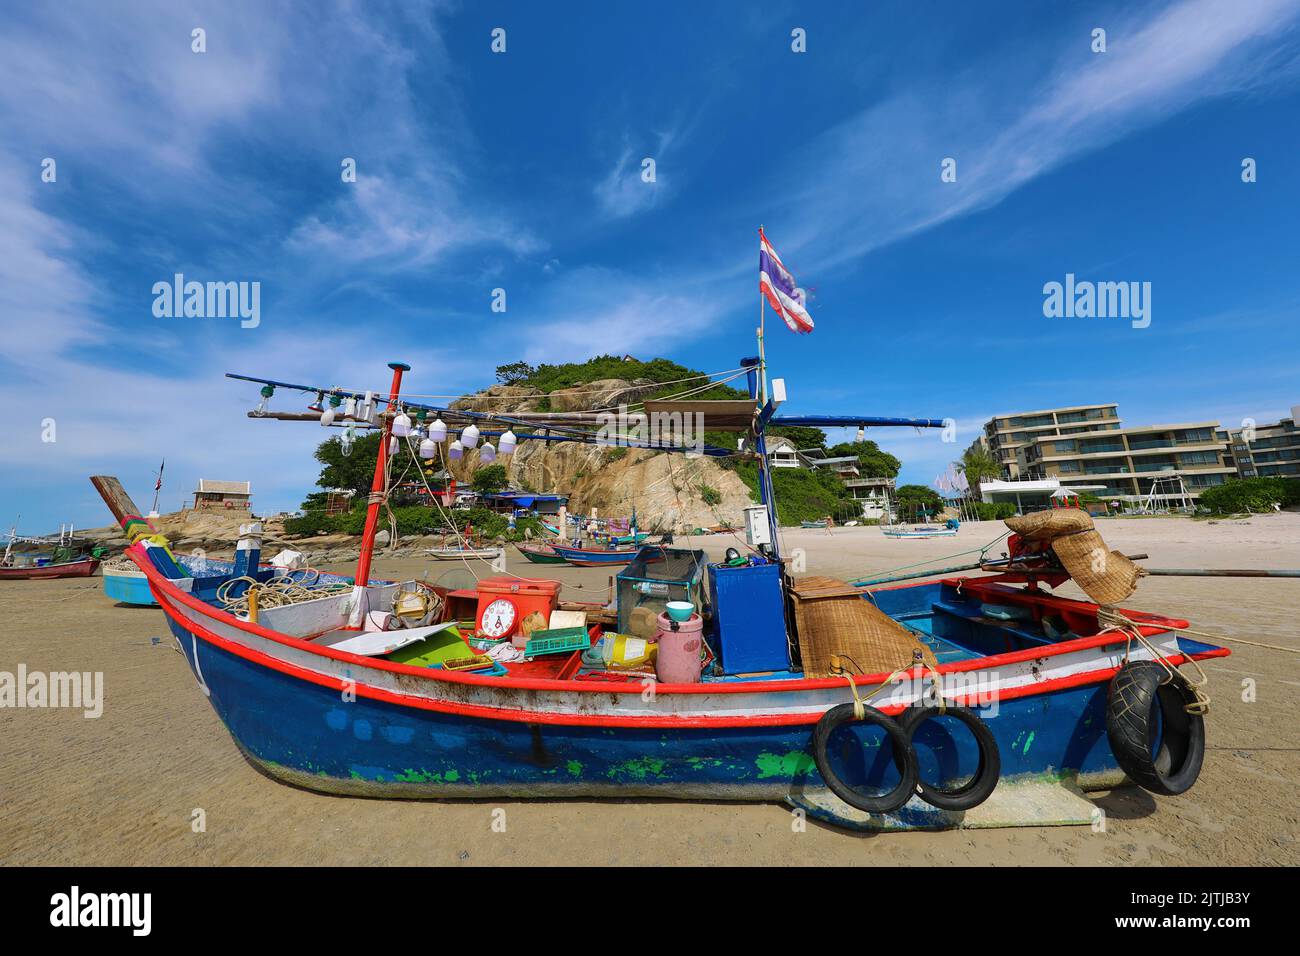 Fishing Boat beached on Khao Takiab beach, Hua Hin, Thailand Stock Photo